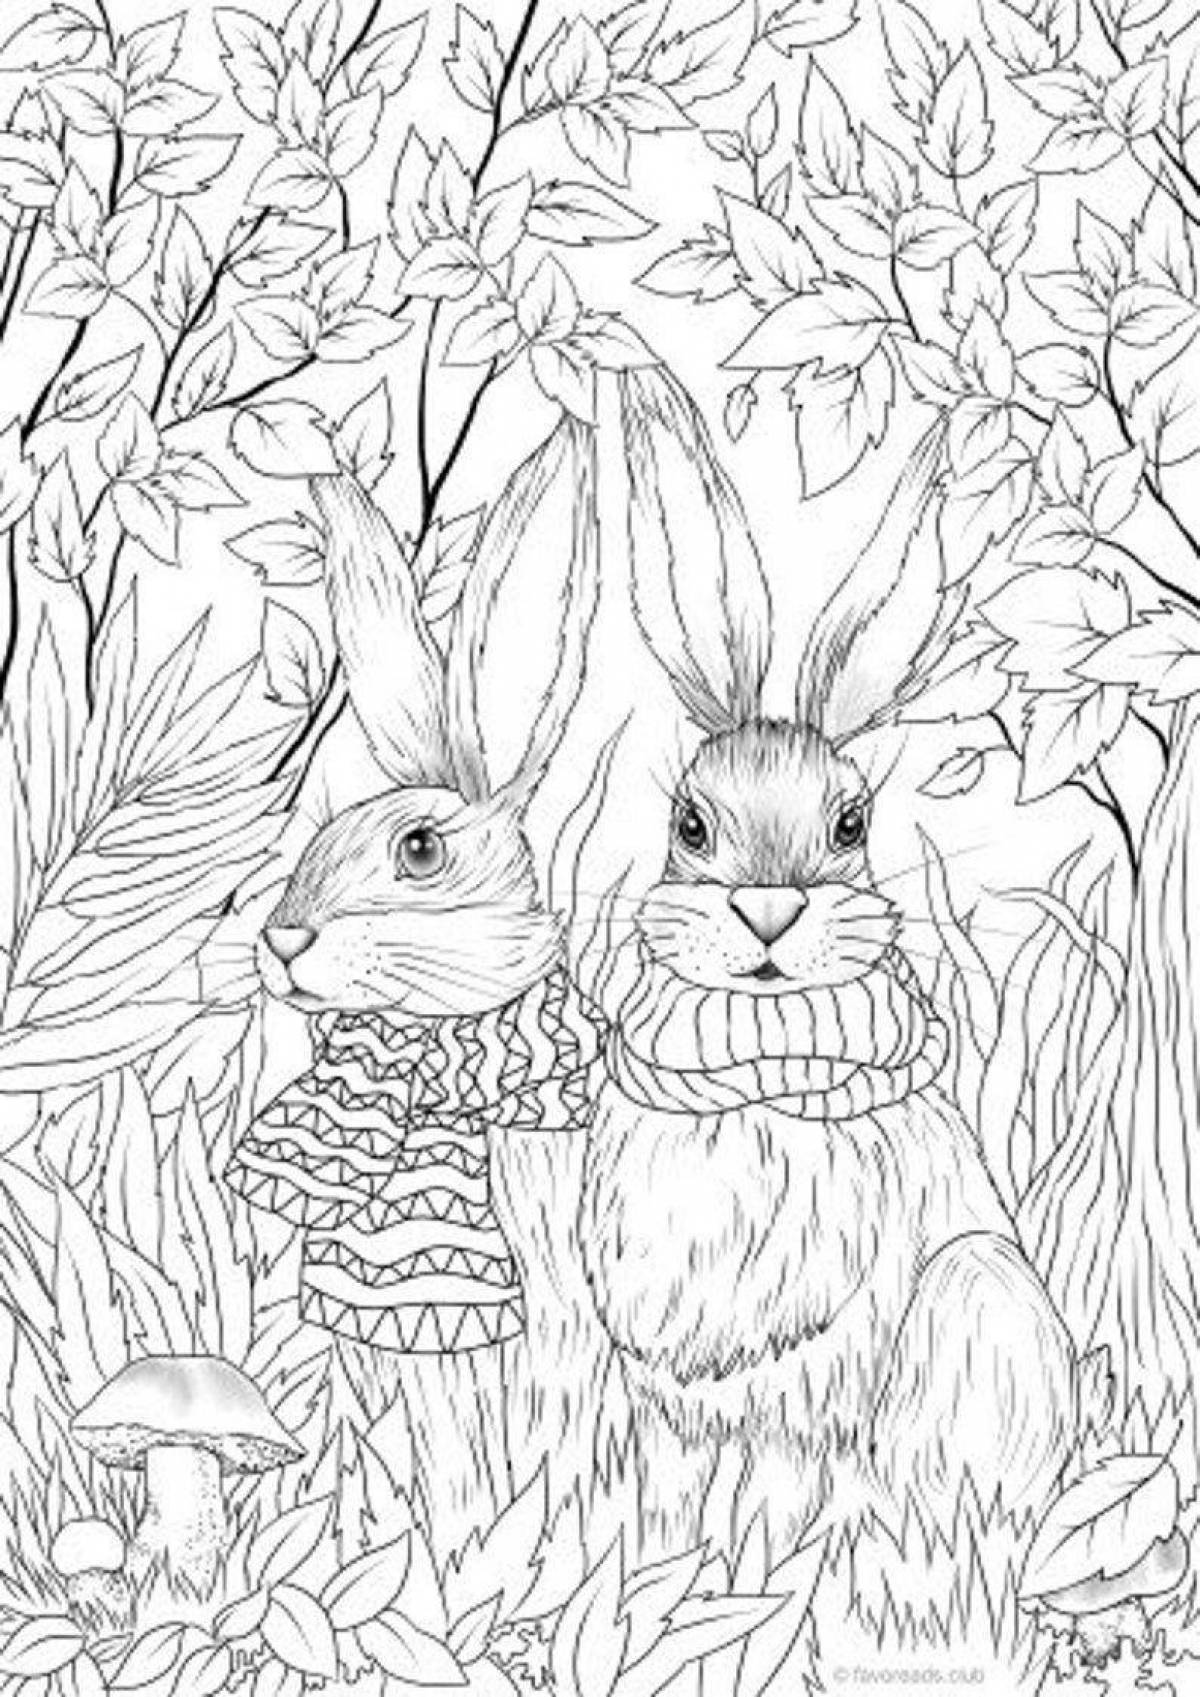 Inspirational bunny anti-stress coloring book